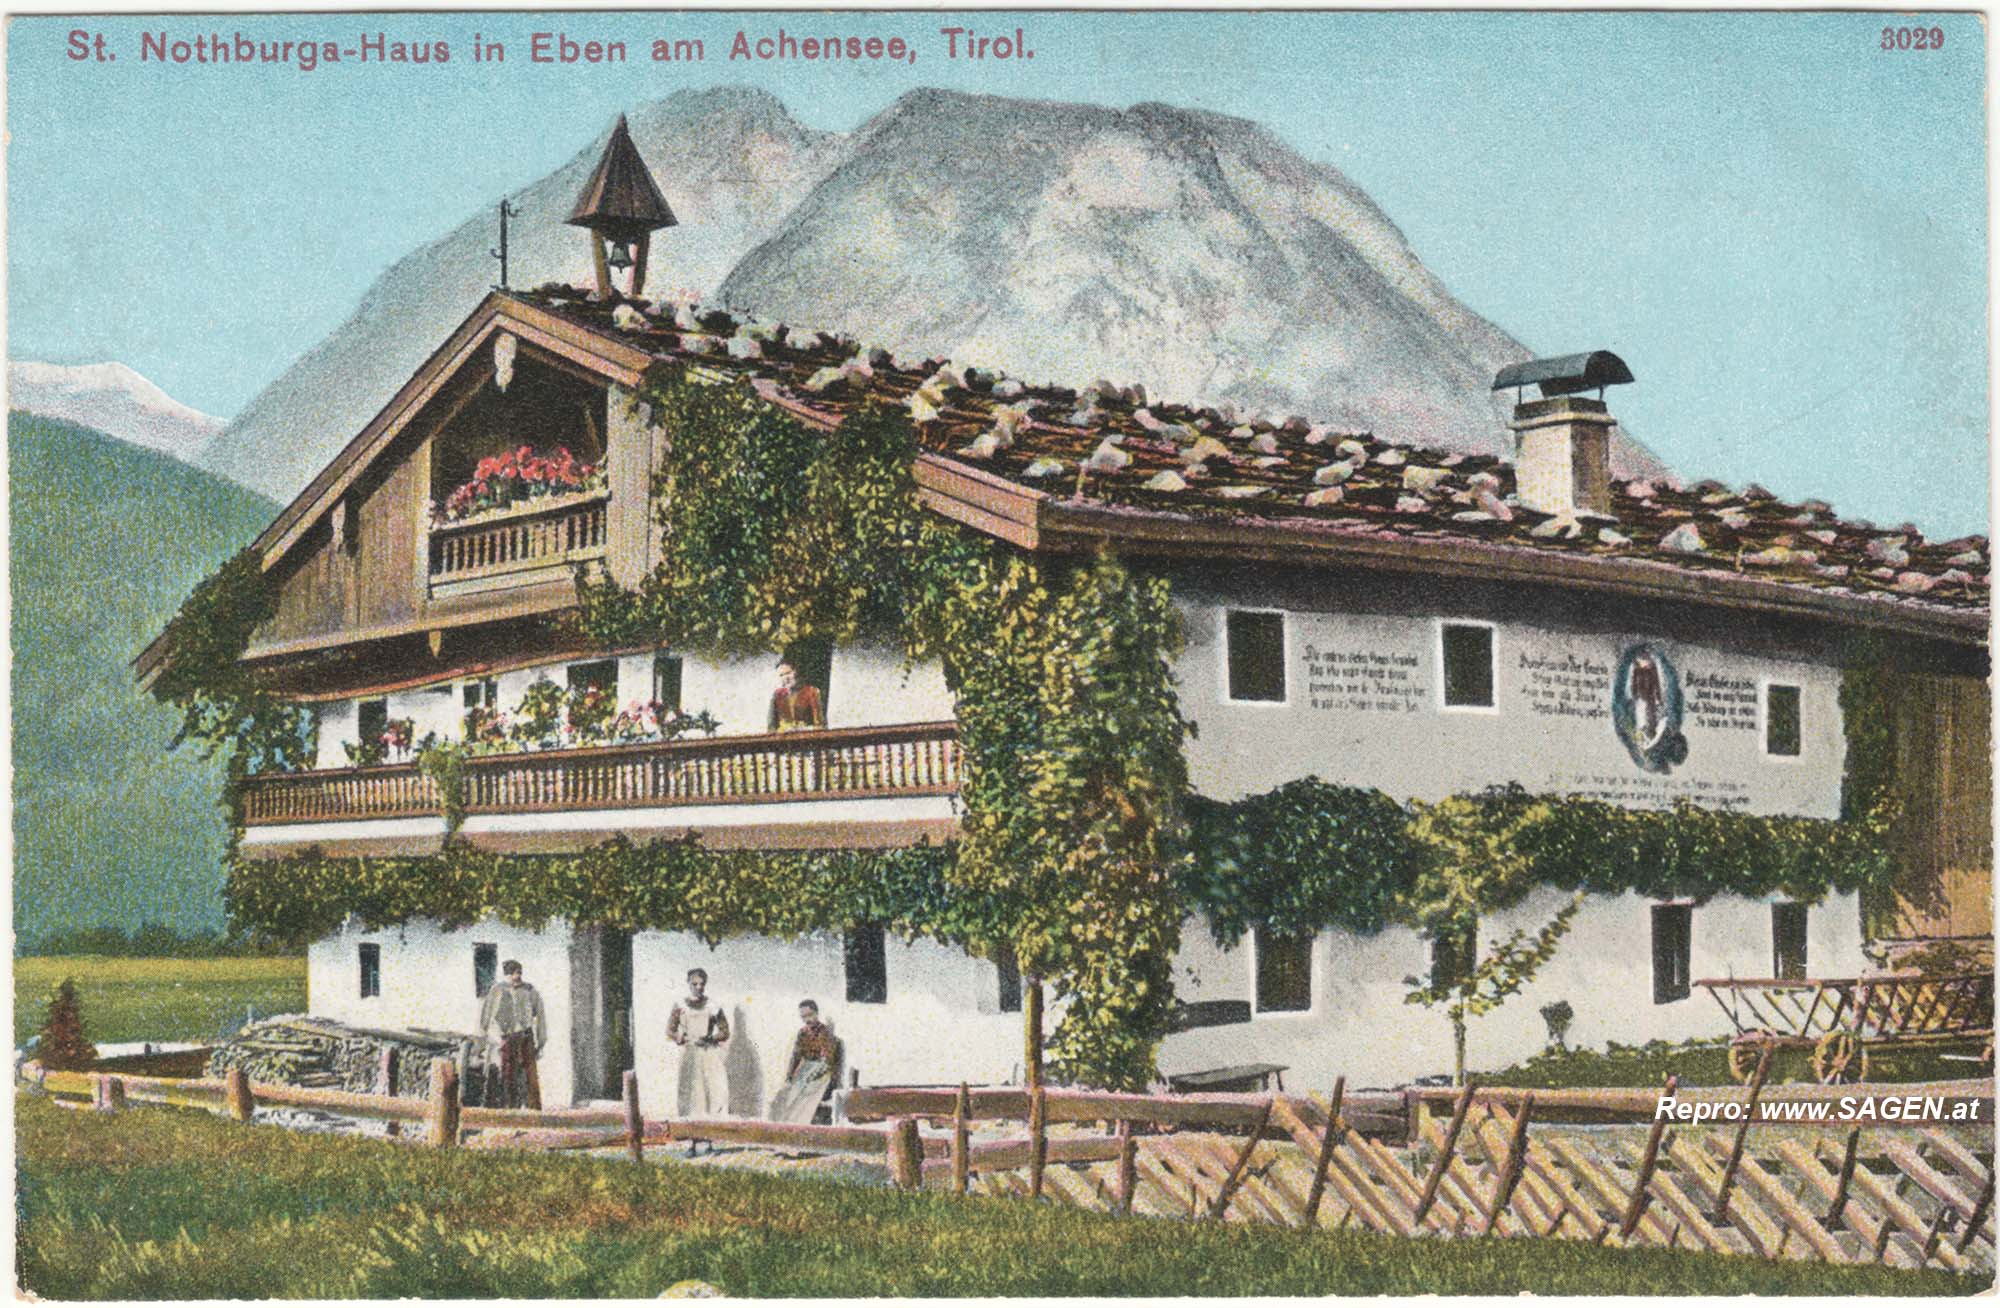 St. Nothburga-Haus in Eben am Achensee, Tirol